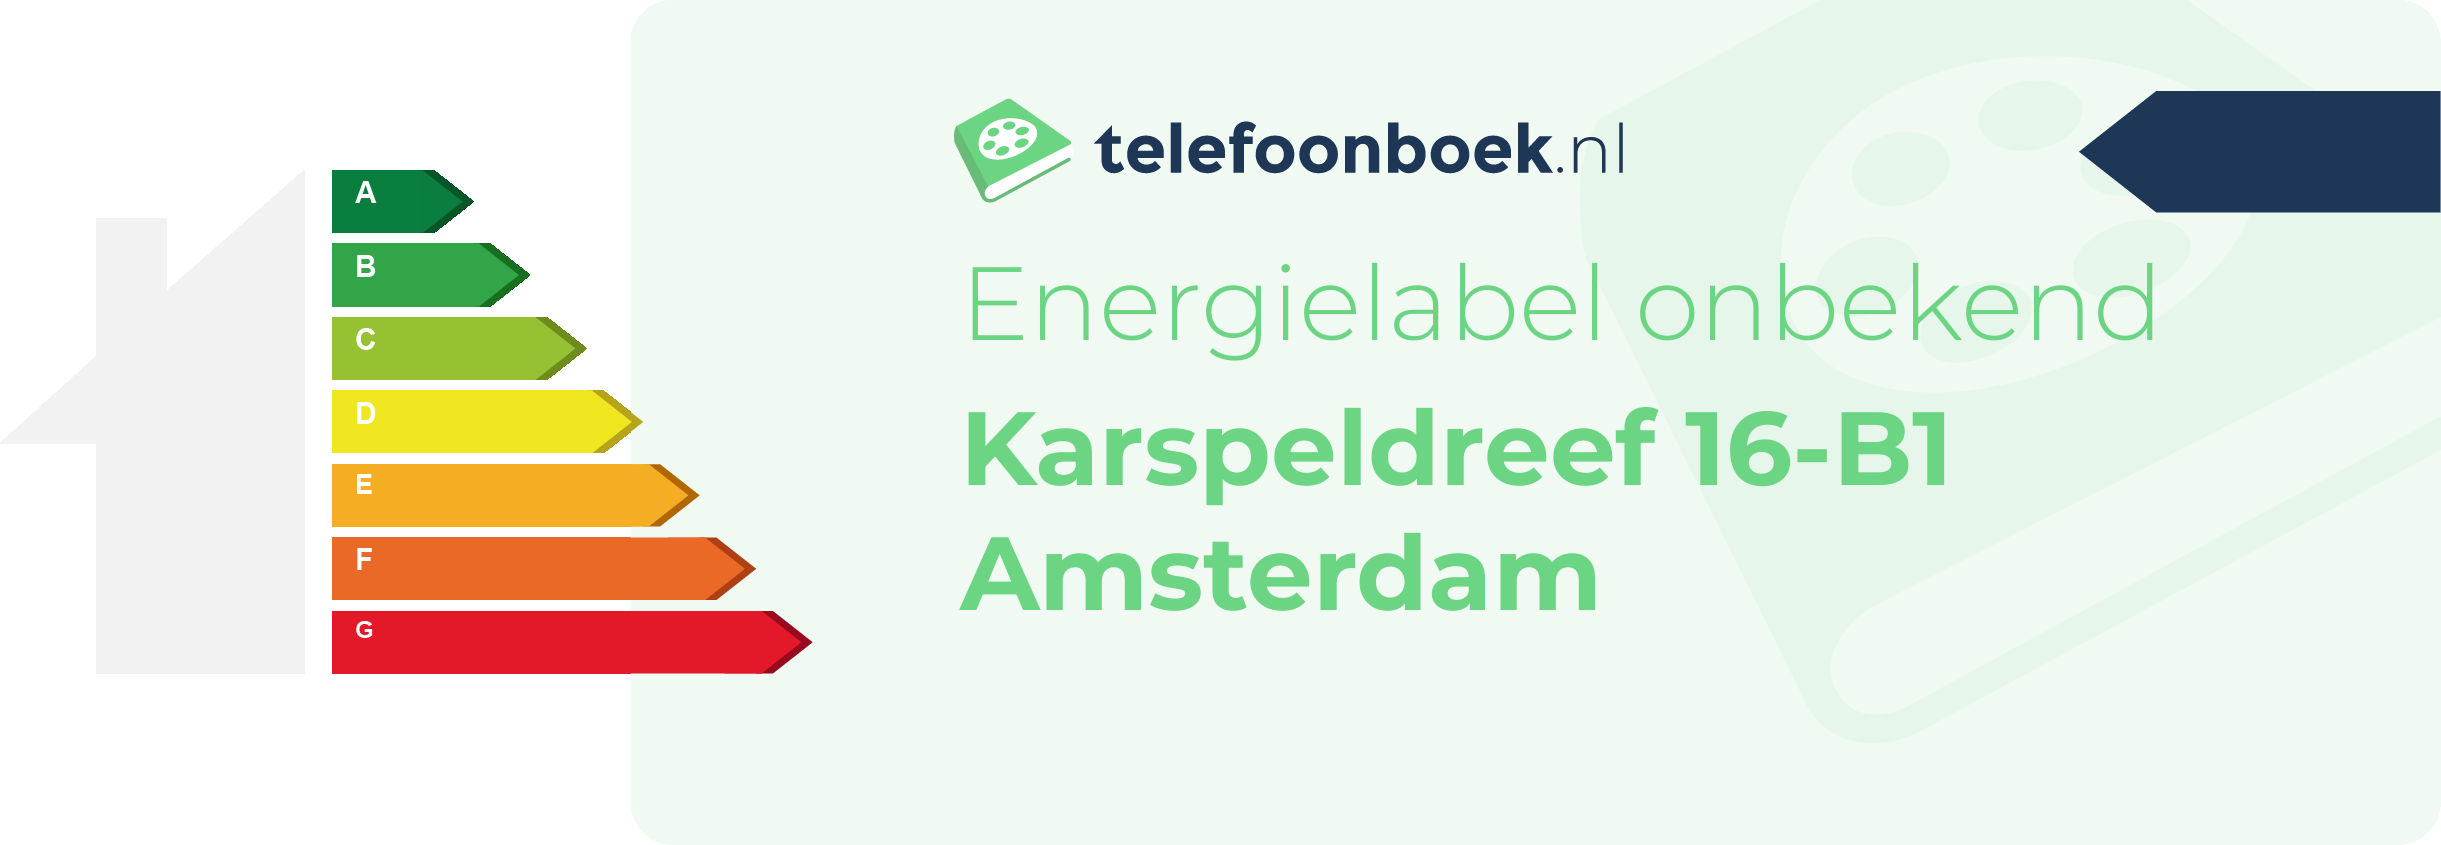 Energielabel Karspeldreef 16-B1 Amsterdam